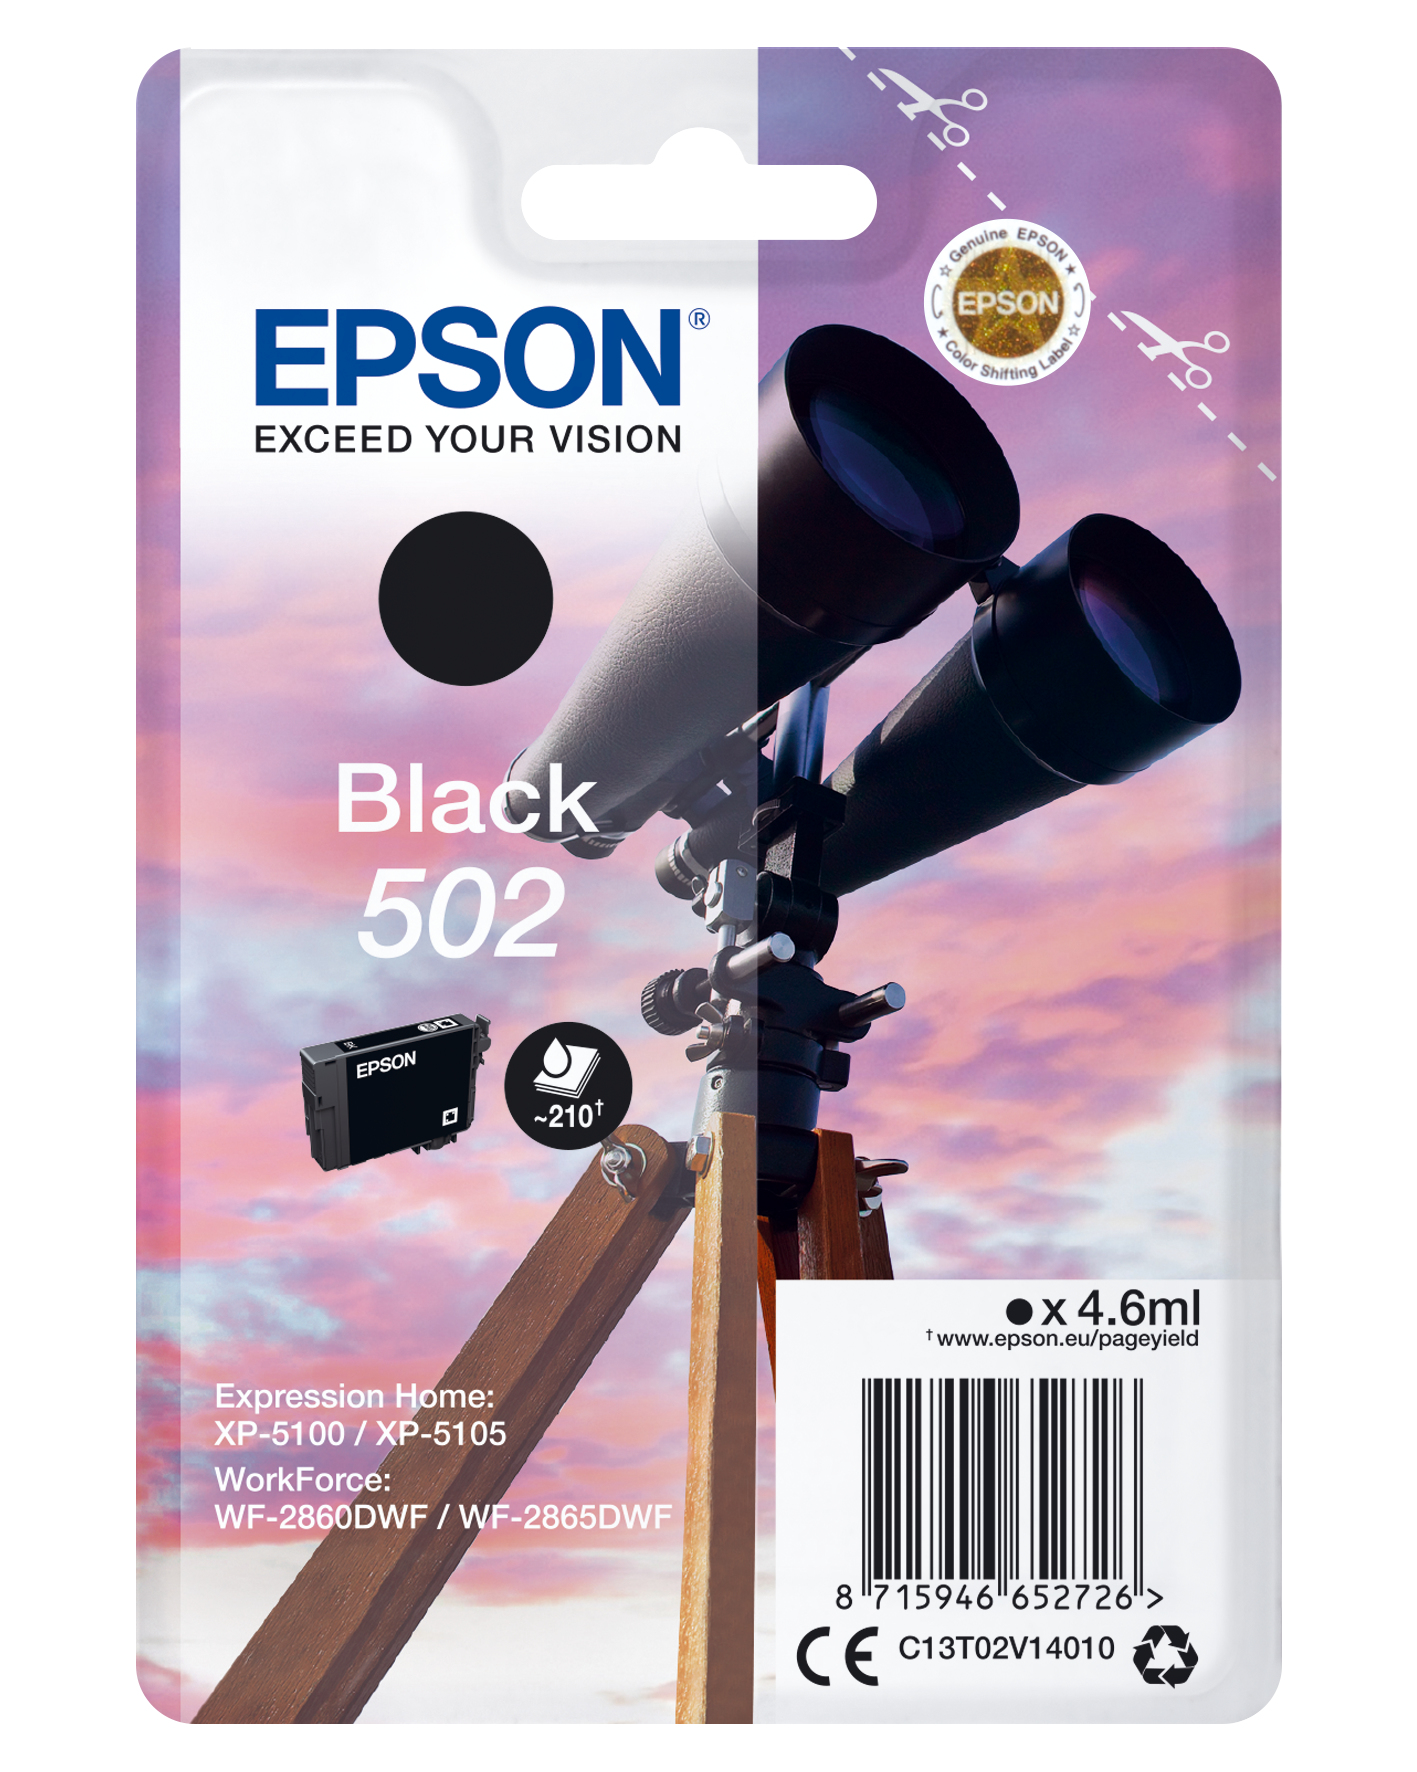 Binoculars Singlepack Black Epson Consumer Ink S1 C13t02v14010 8715946652726